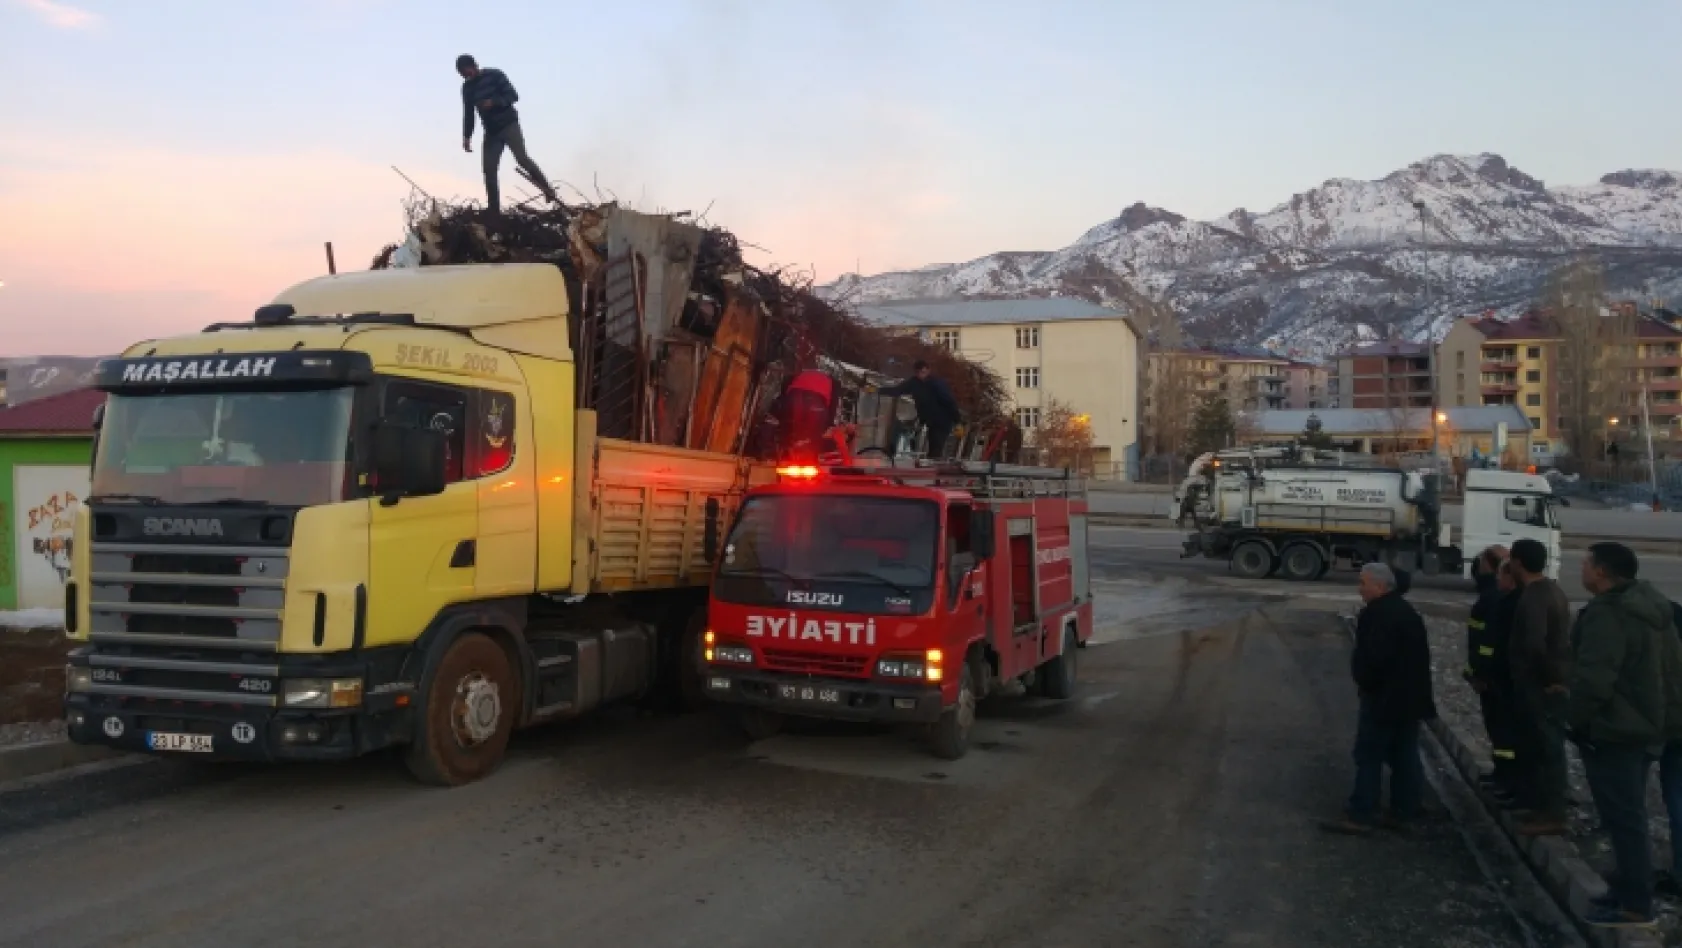 Tunceli'de hurda yüklü araçta yangın çıktı